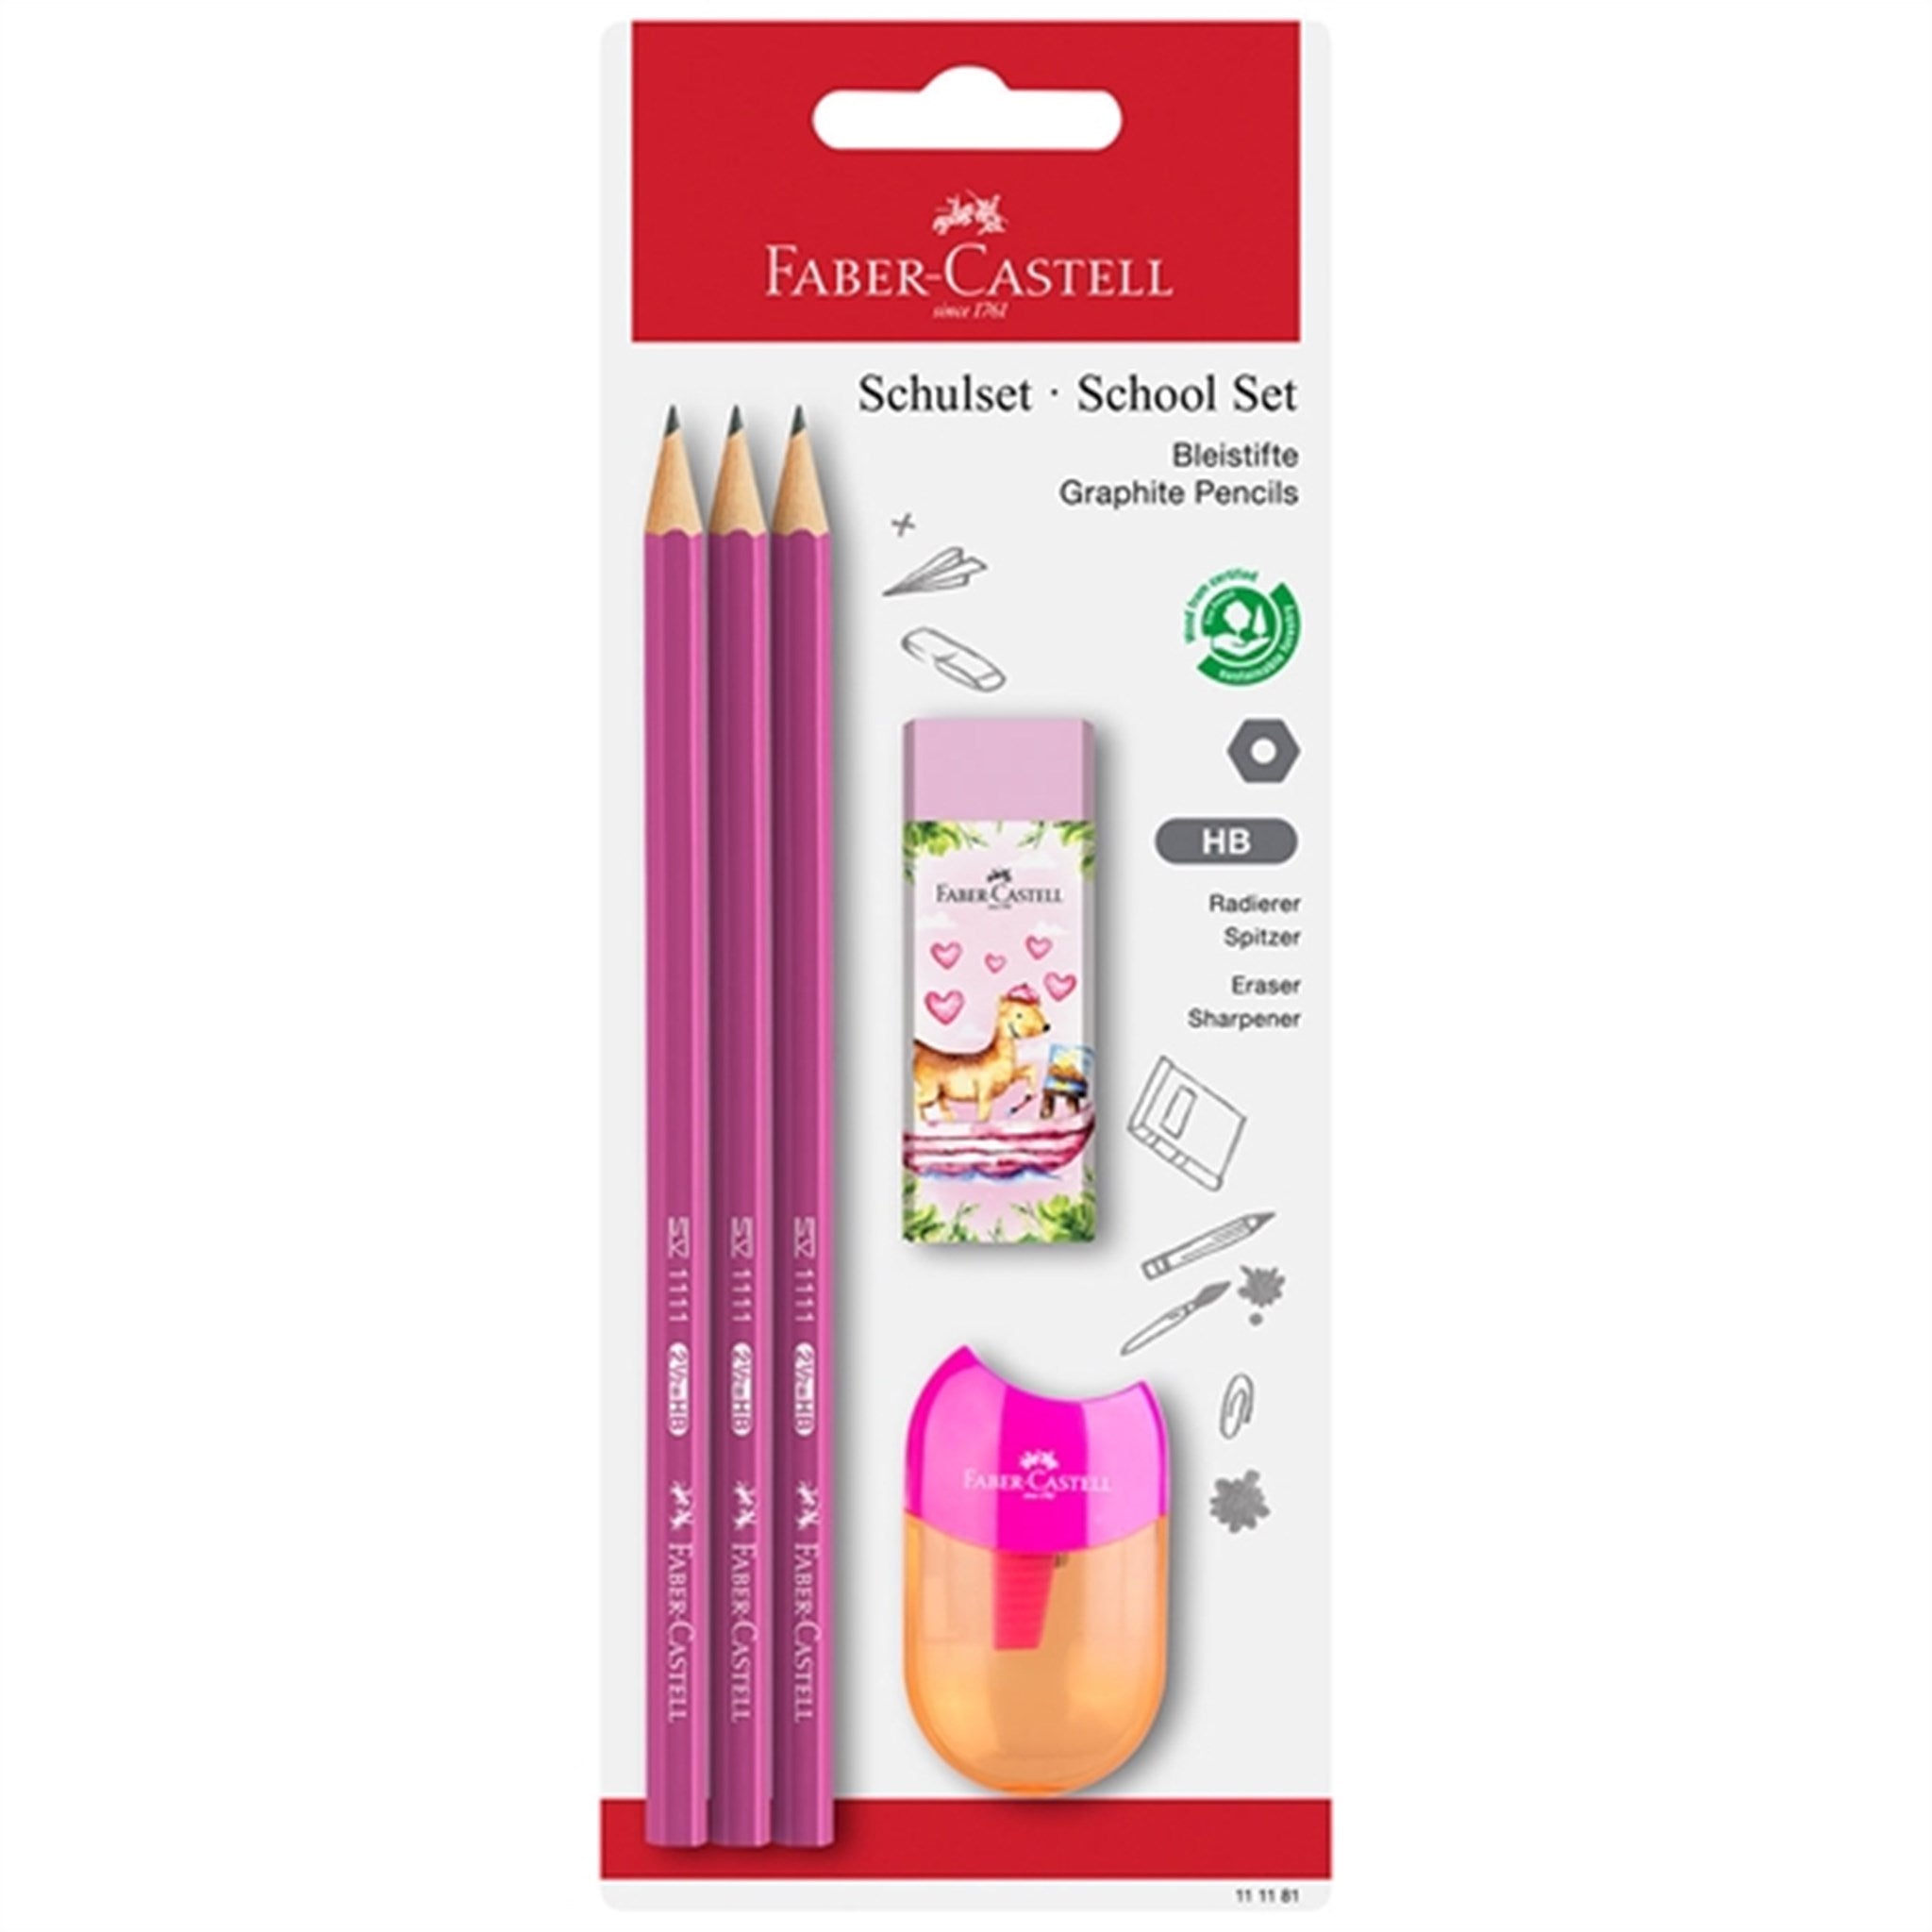 Faber-Castell 3 Pencils, 1 Sharpener, Eraser Pink